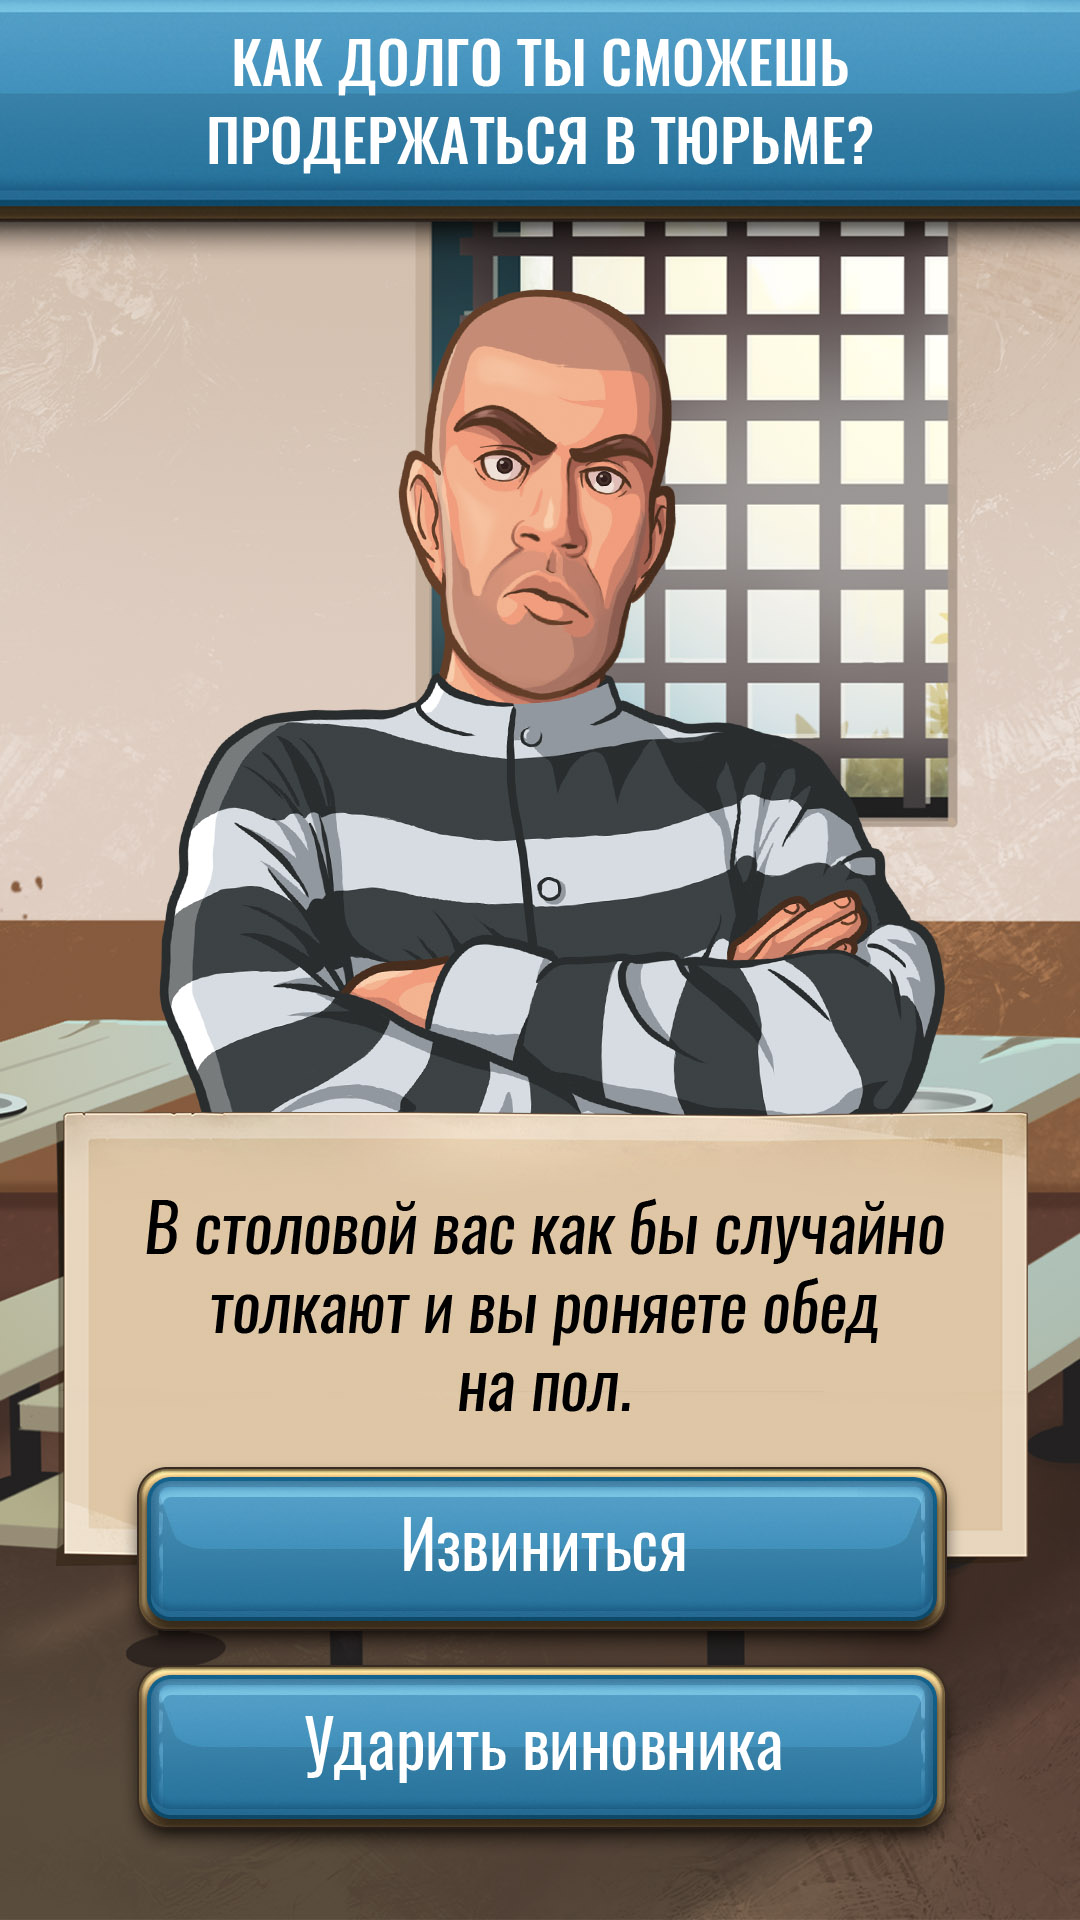 Изображение: Hoosegow: Prison Survival